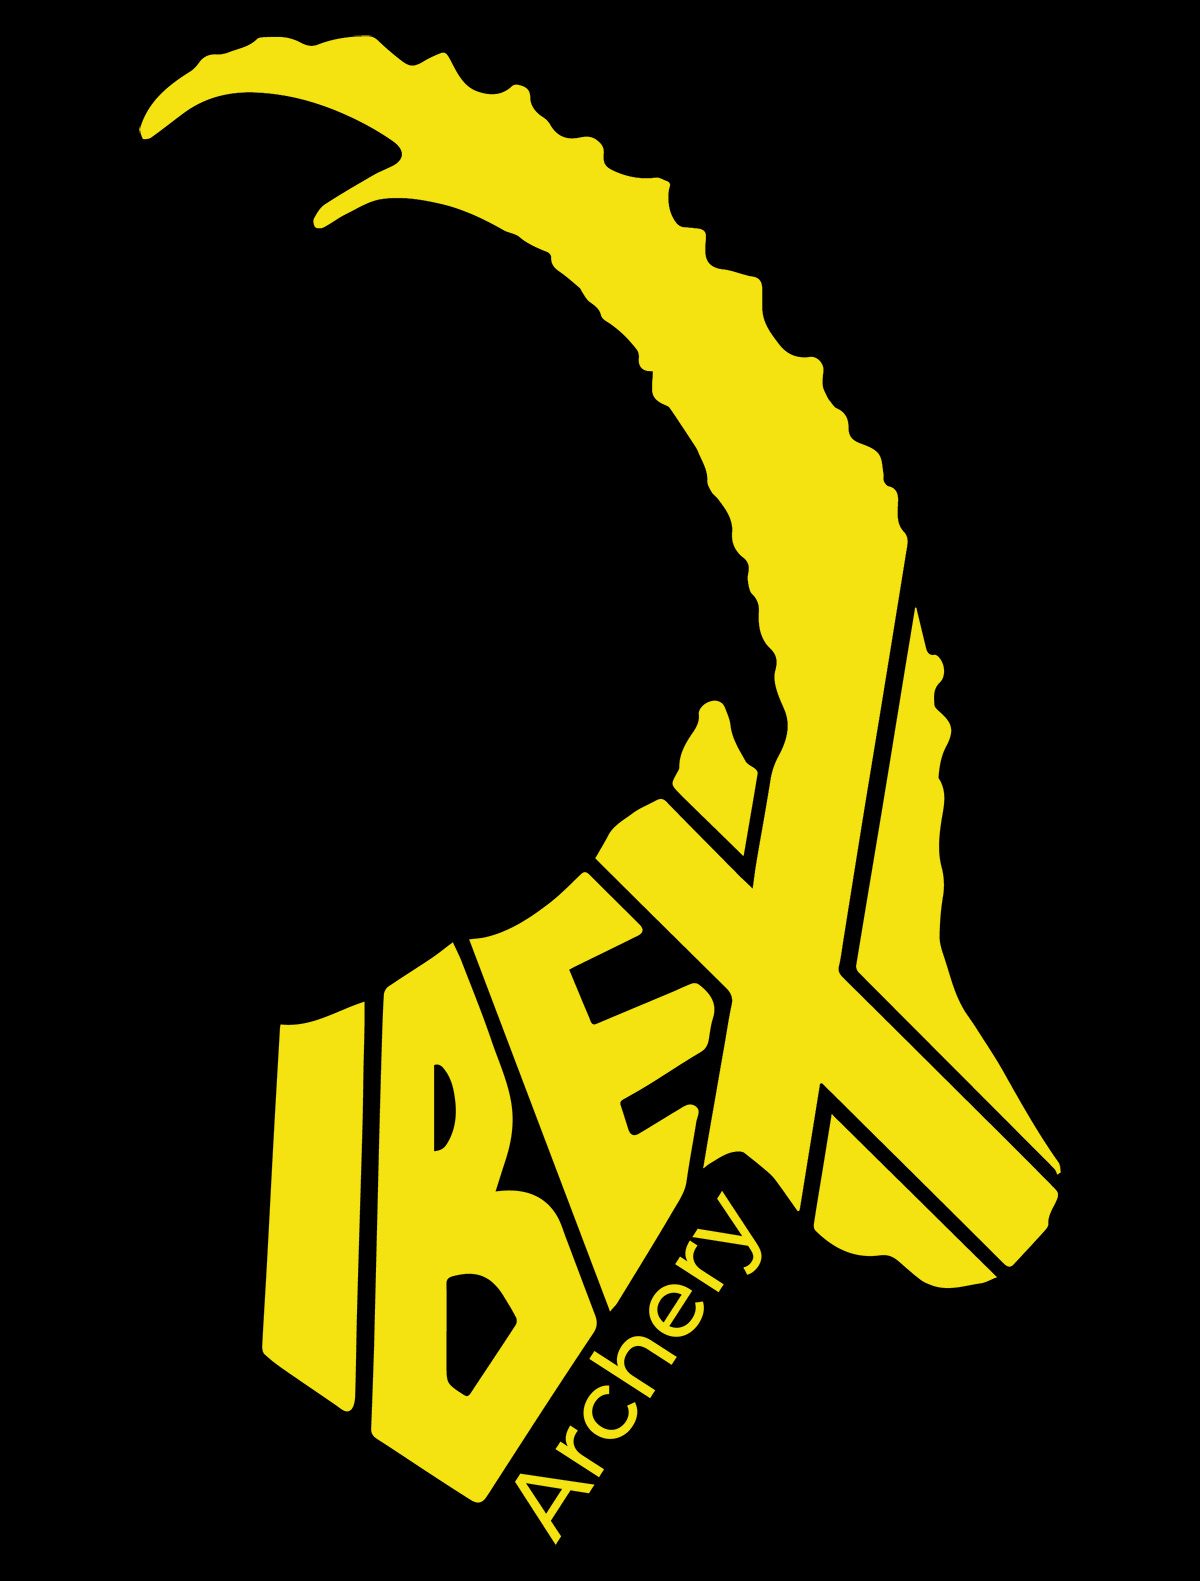 (c) Ibex-archery.ch